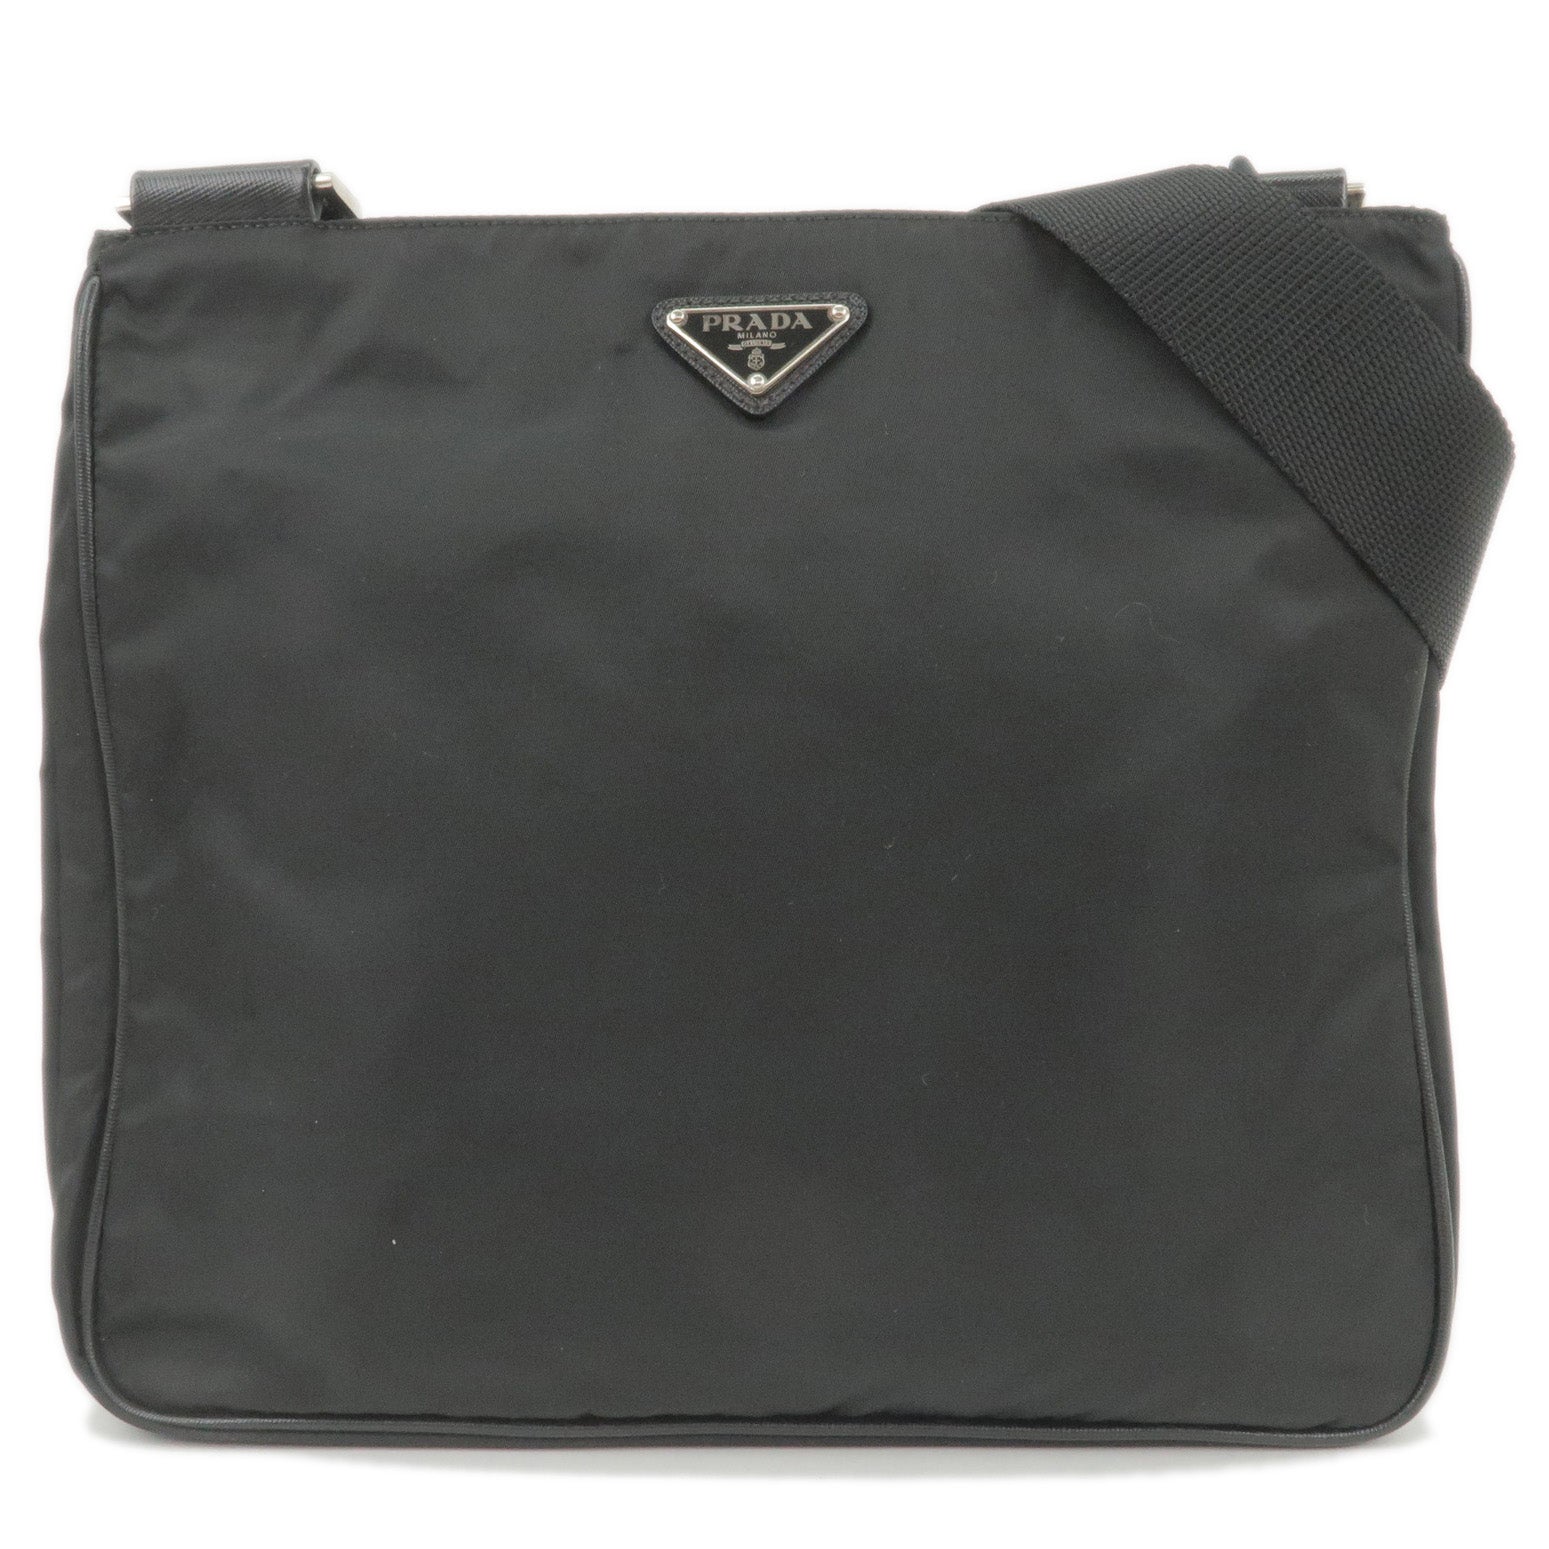 PRADA Nylon Messenger Bags for Women